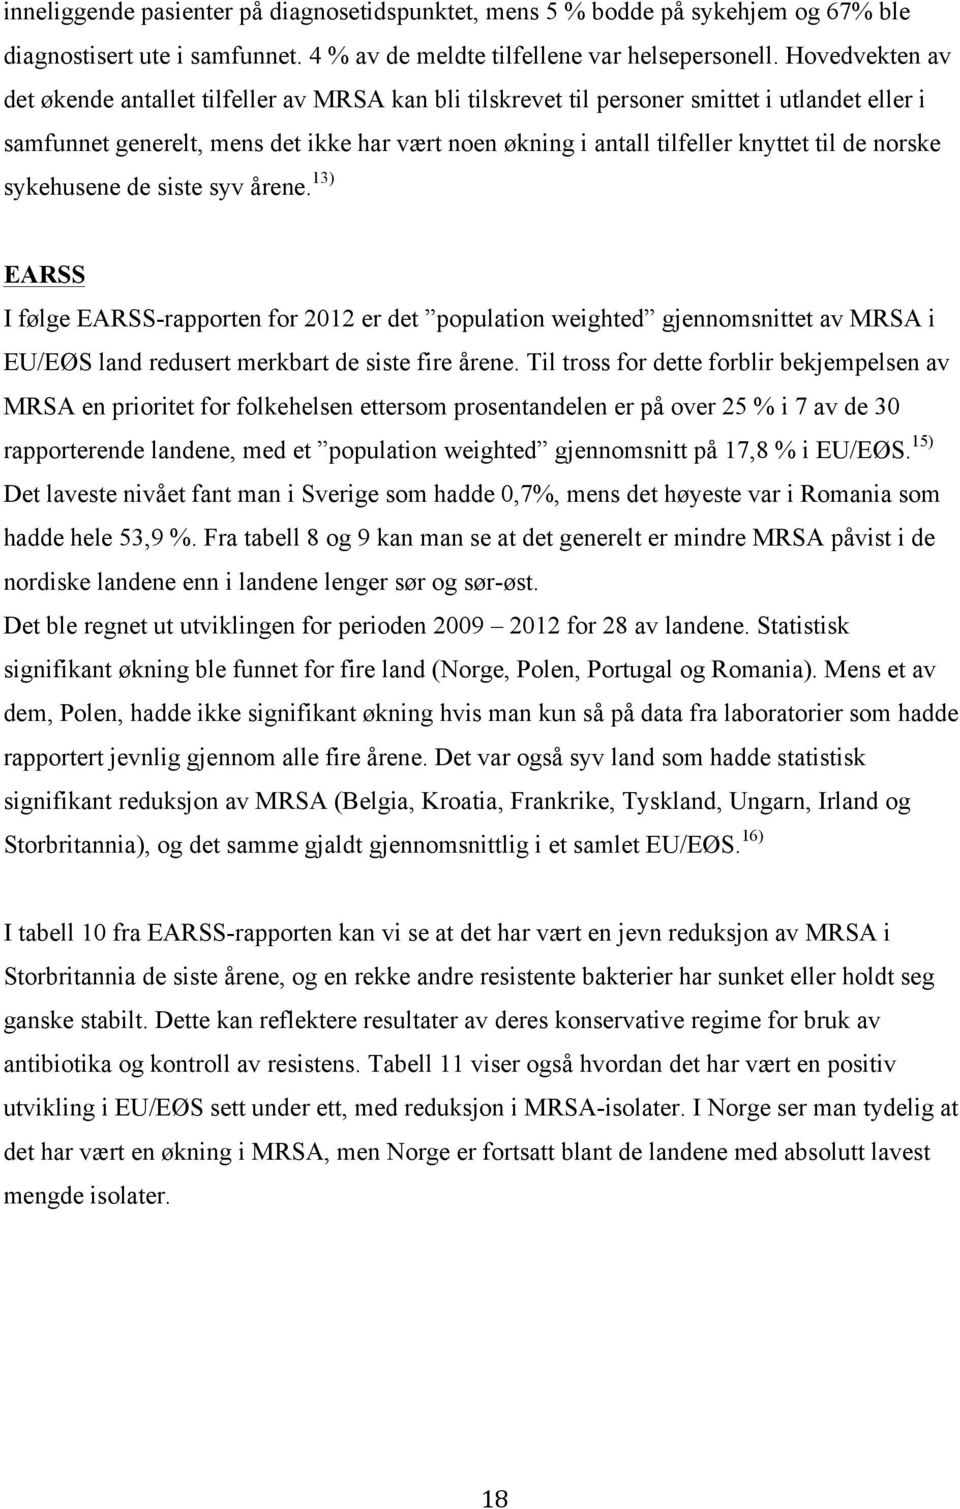 de norske sykehusene de siste syv årene. 13) EARSS I følge EARSS-rapporten for 2012 er det population weighted gjennomsnittet av MRSA i EU/EØS land redusert merkbart de siste fire årene.